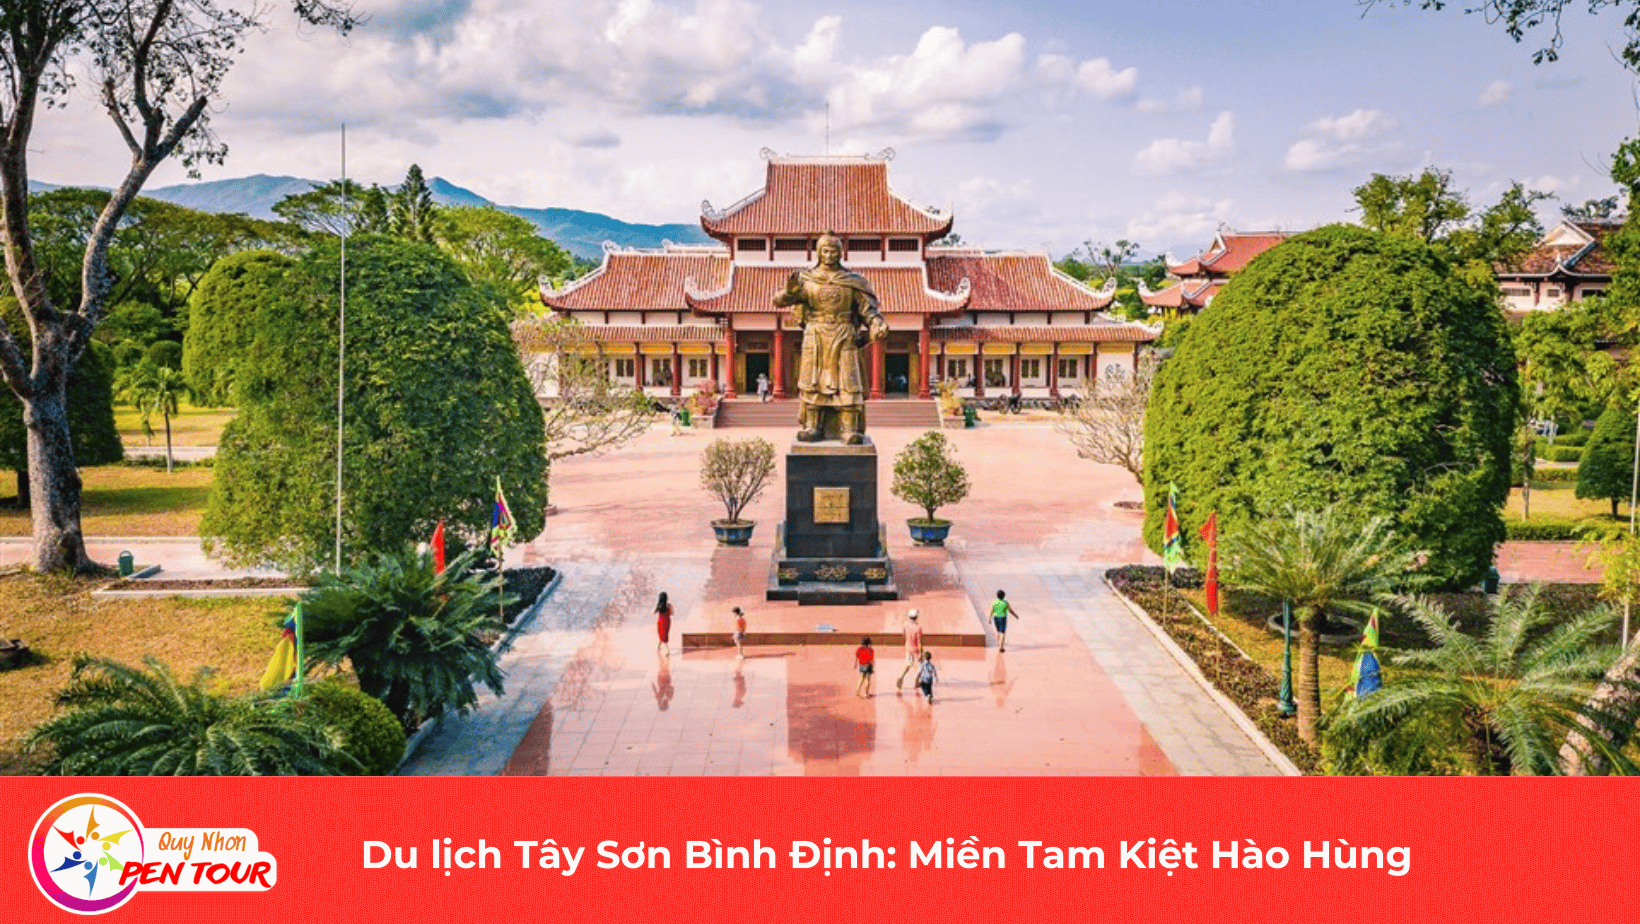 Du lịch Tây Sơn Bình Định: Miền Tam Kiệt Hào Hùng